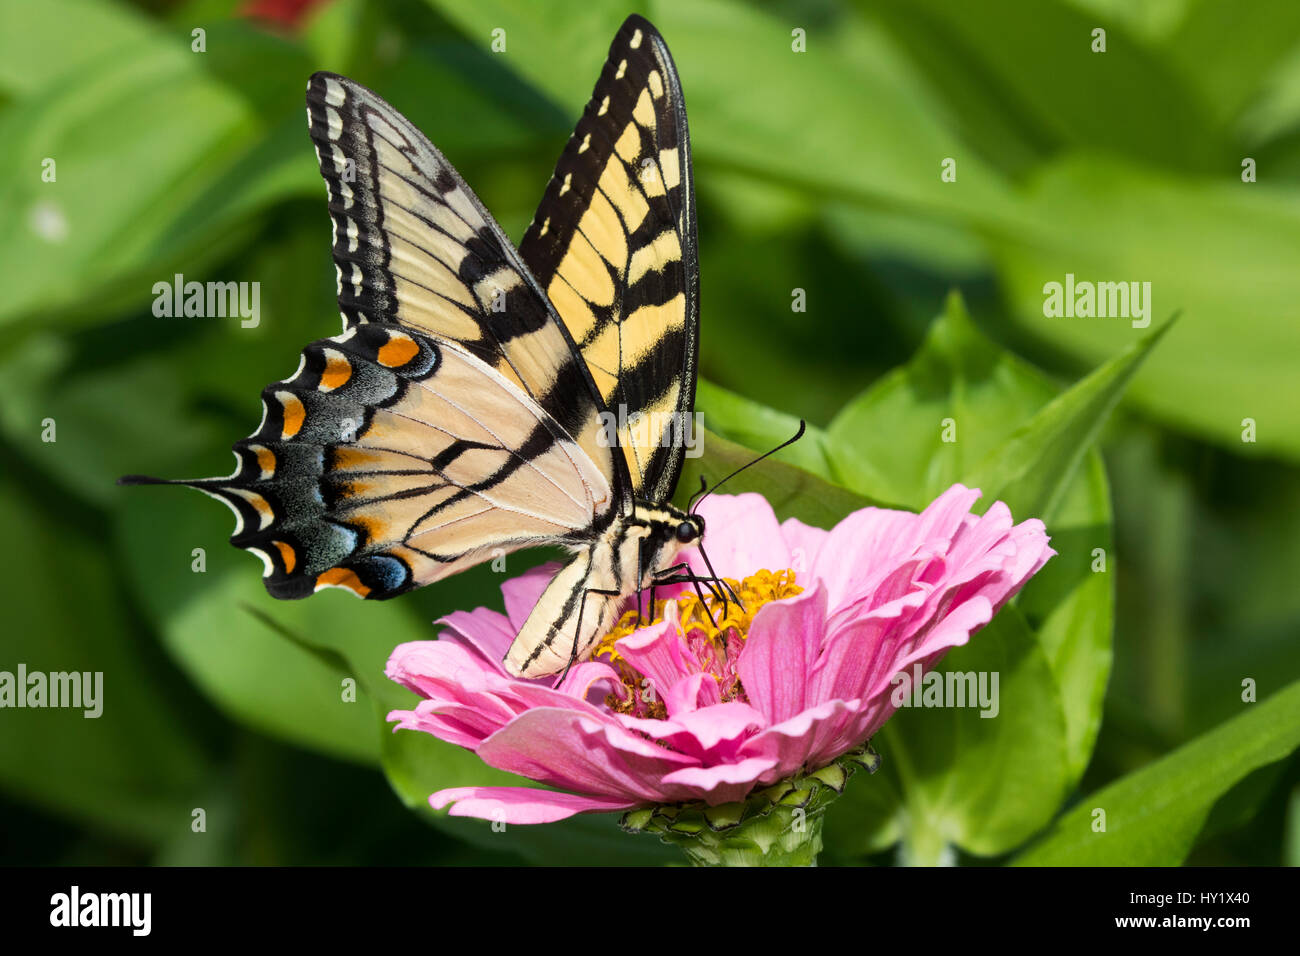 Orientale a coda di rondine di Tiger Butterfly (Papilio glaucus) nectaring su Zinnia in fattoria giardino, selvaggia e libera. Essex, Connecticut, Stati Uniti d'America. Foto Stock